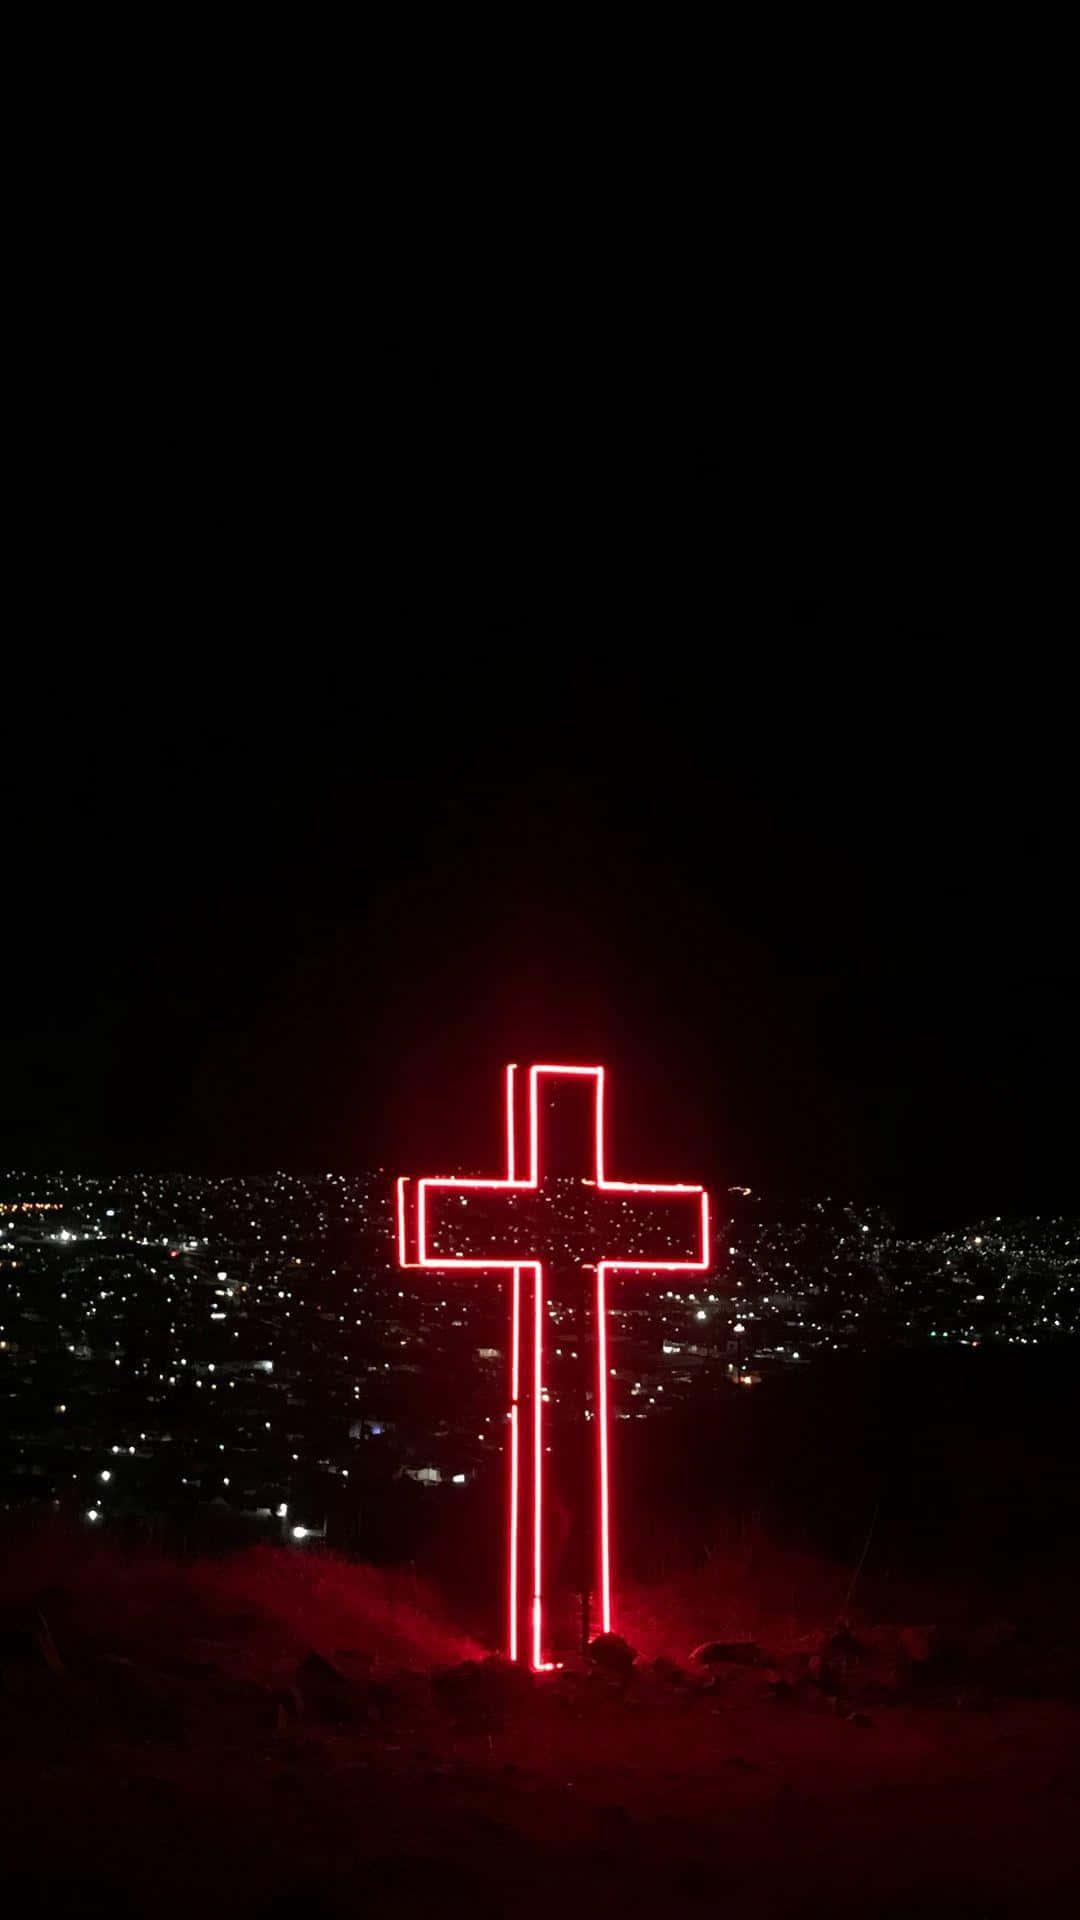 Cross of Neon Lights Wallpaper